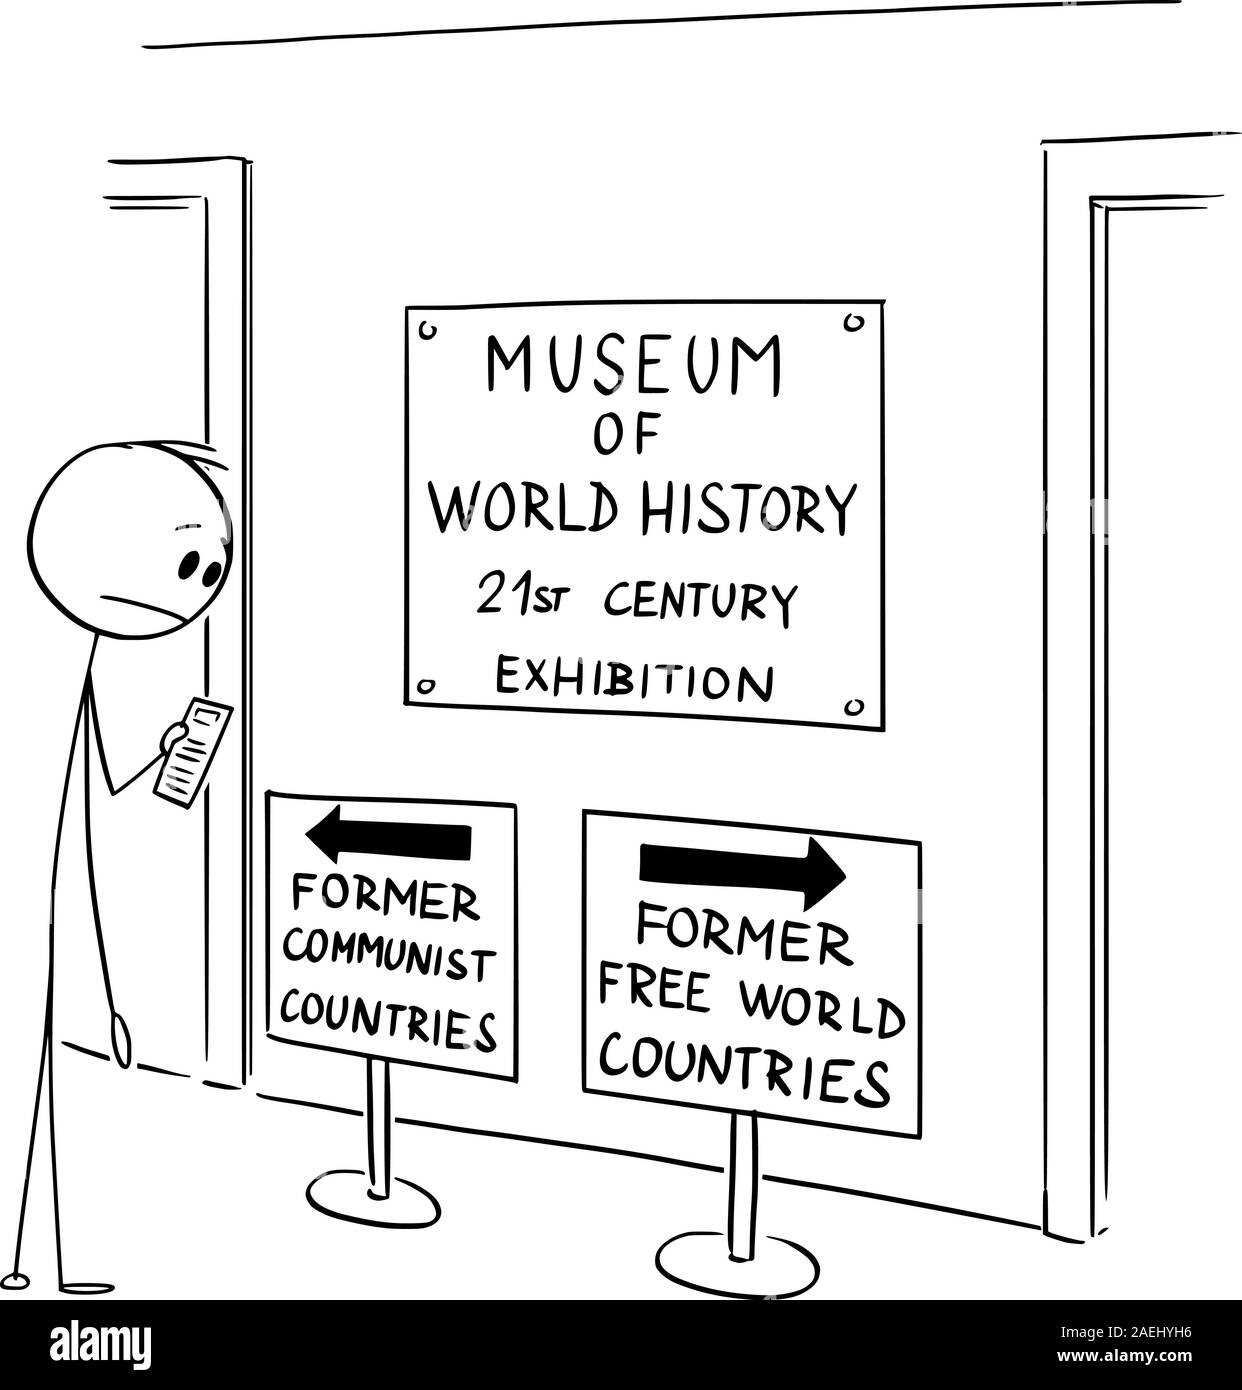 Vector cartoon stick figura disegno illustrazione concettuale dell'uomo in museo guardando il testo ambiguo sul cartello che indica la perdita di libertà e di libertà nei paesi occidentali, noto anche come mondo libero. Illustrazione Vettoriale